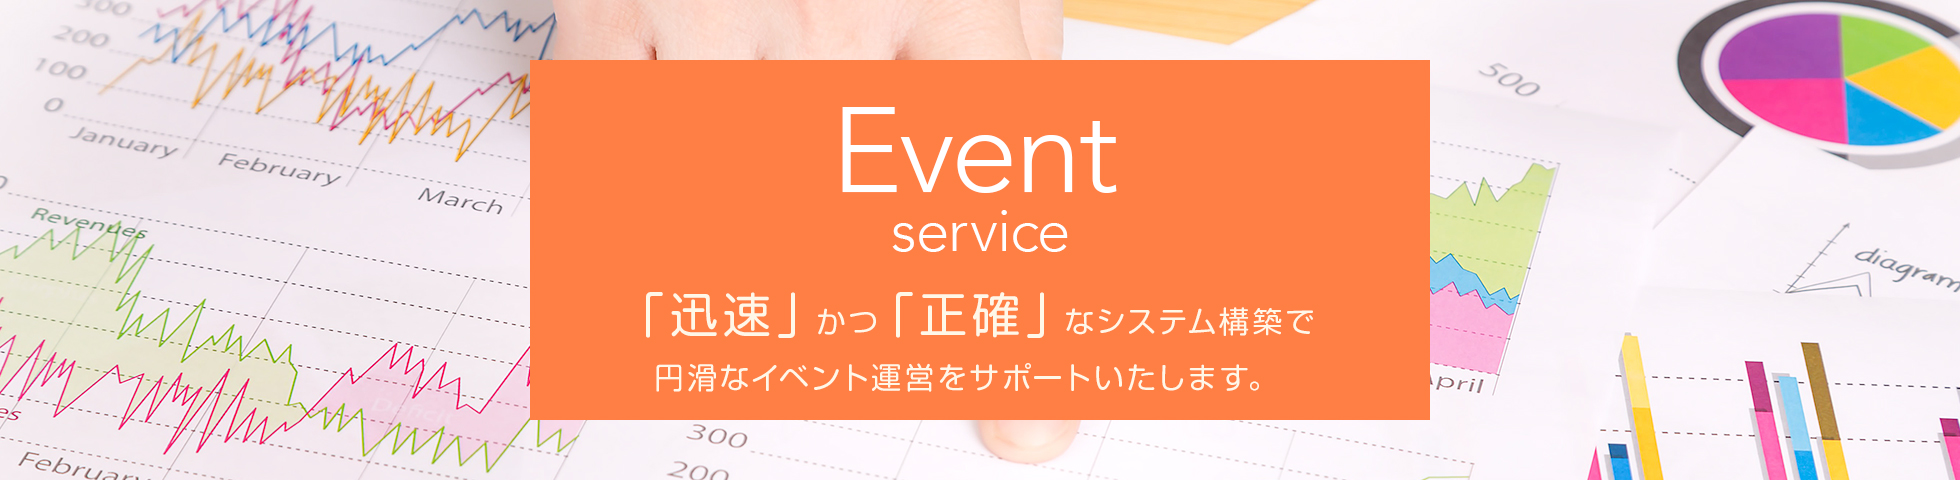 event service イベントサービス